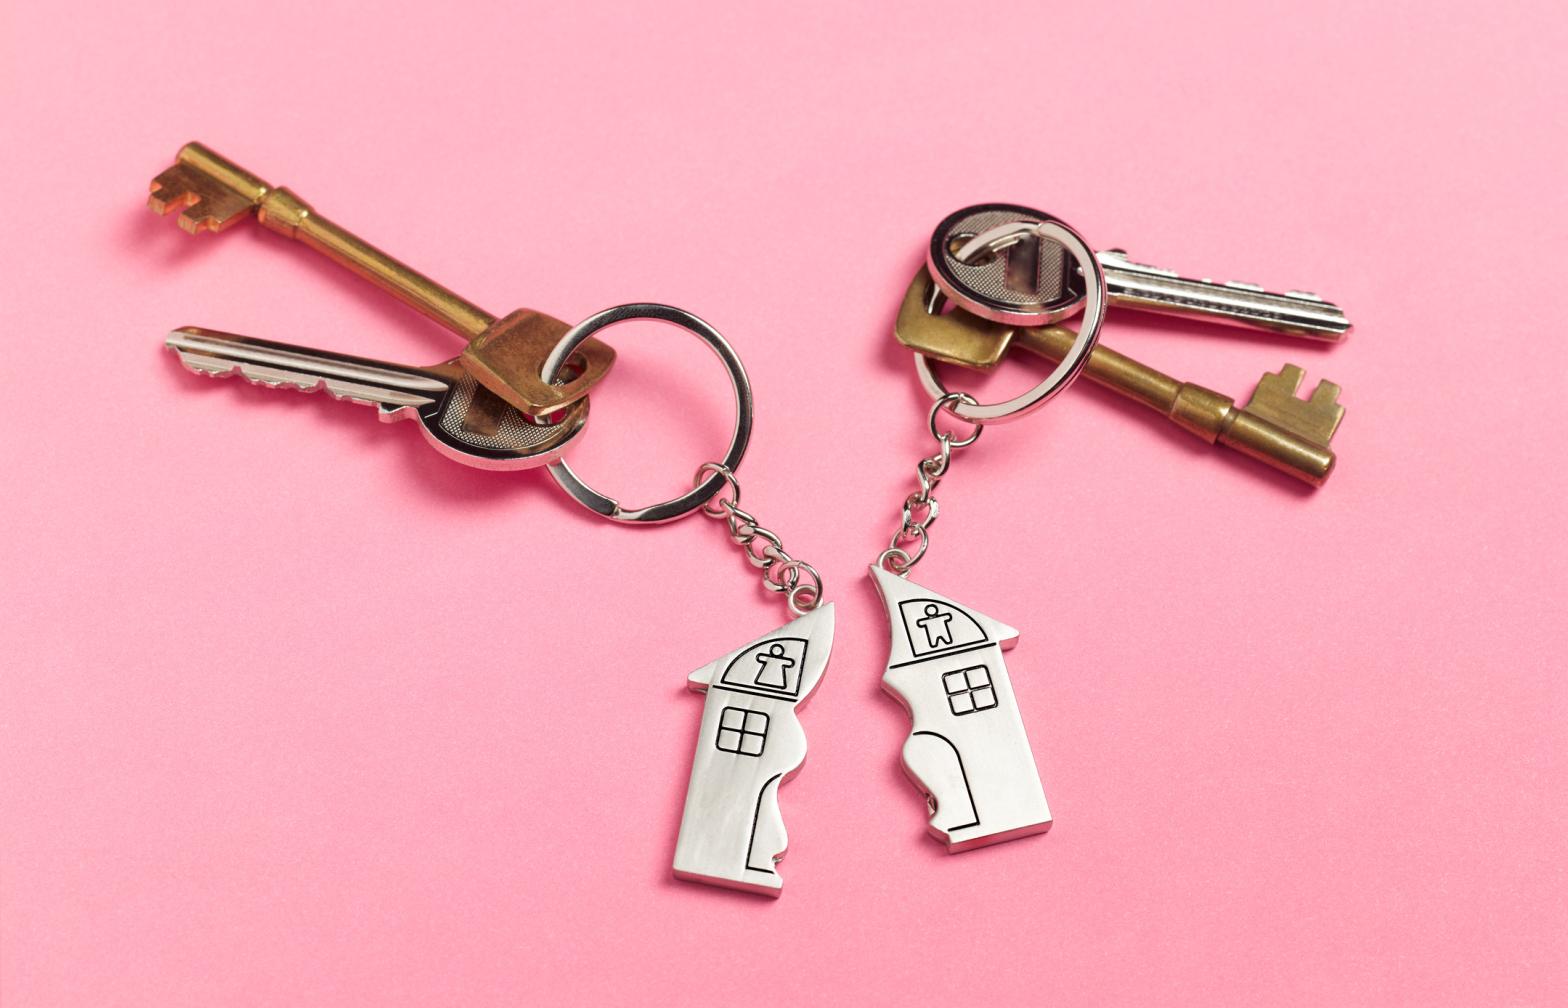 Divorce australia how to get a divorce house keys on pink